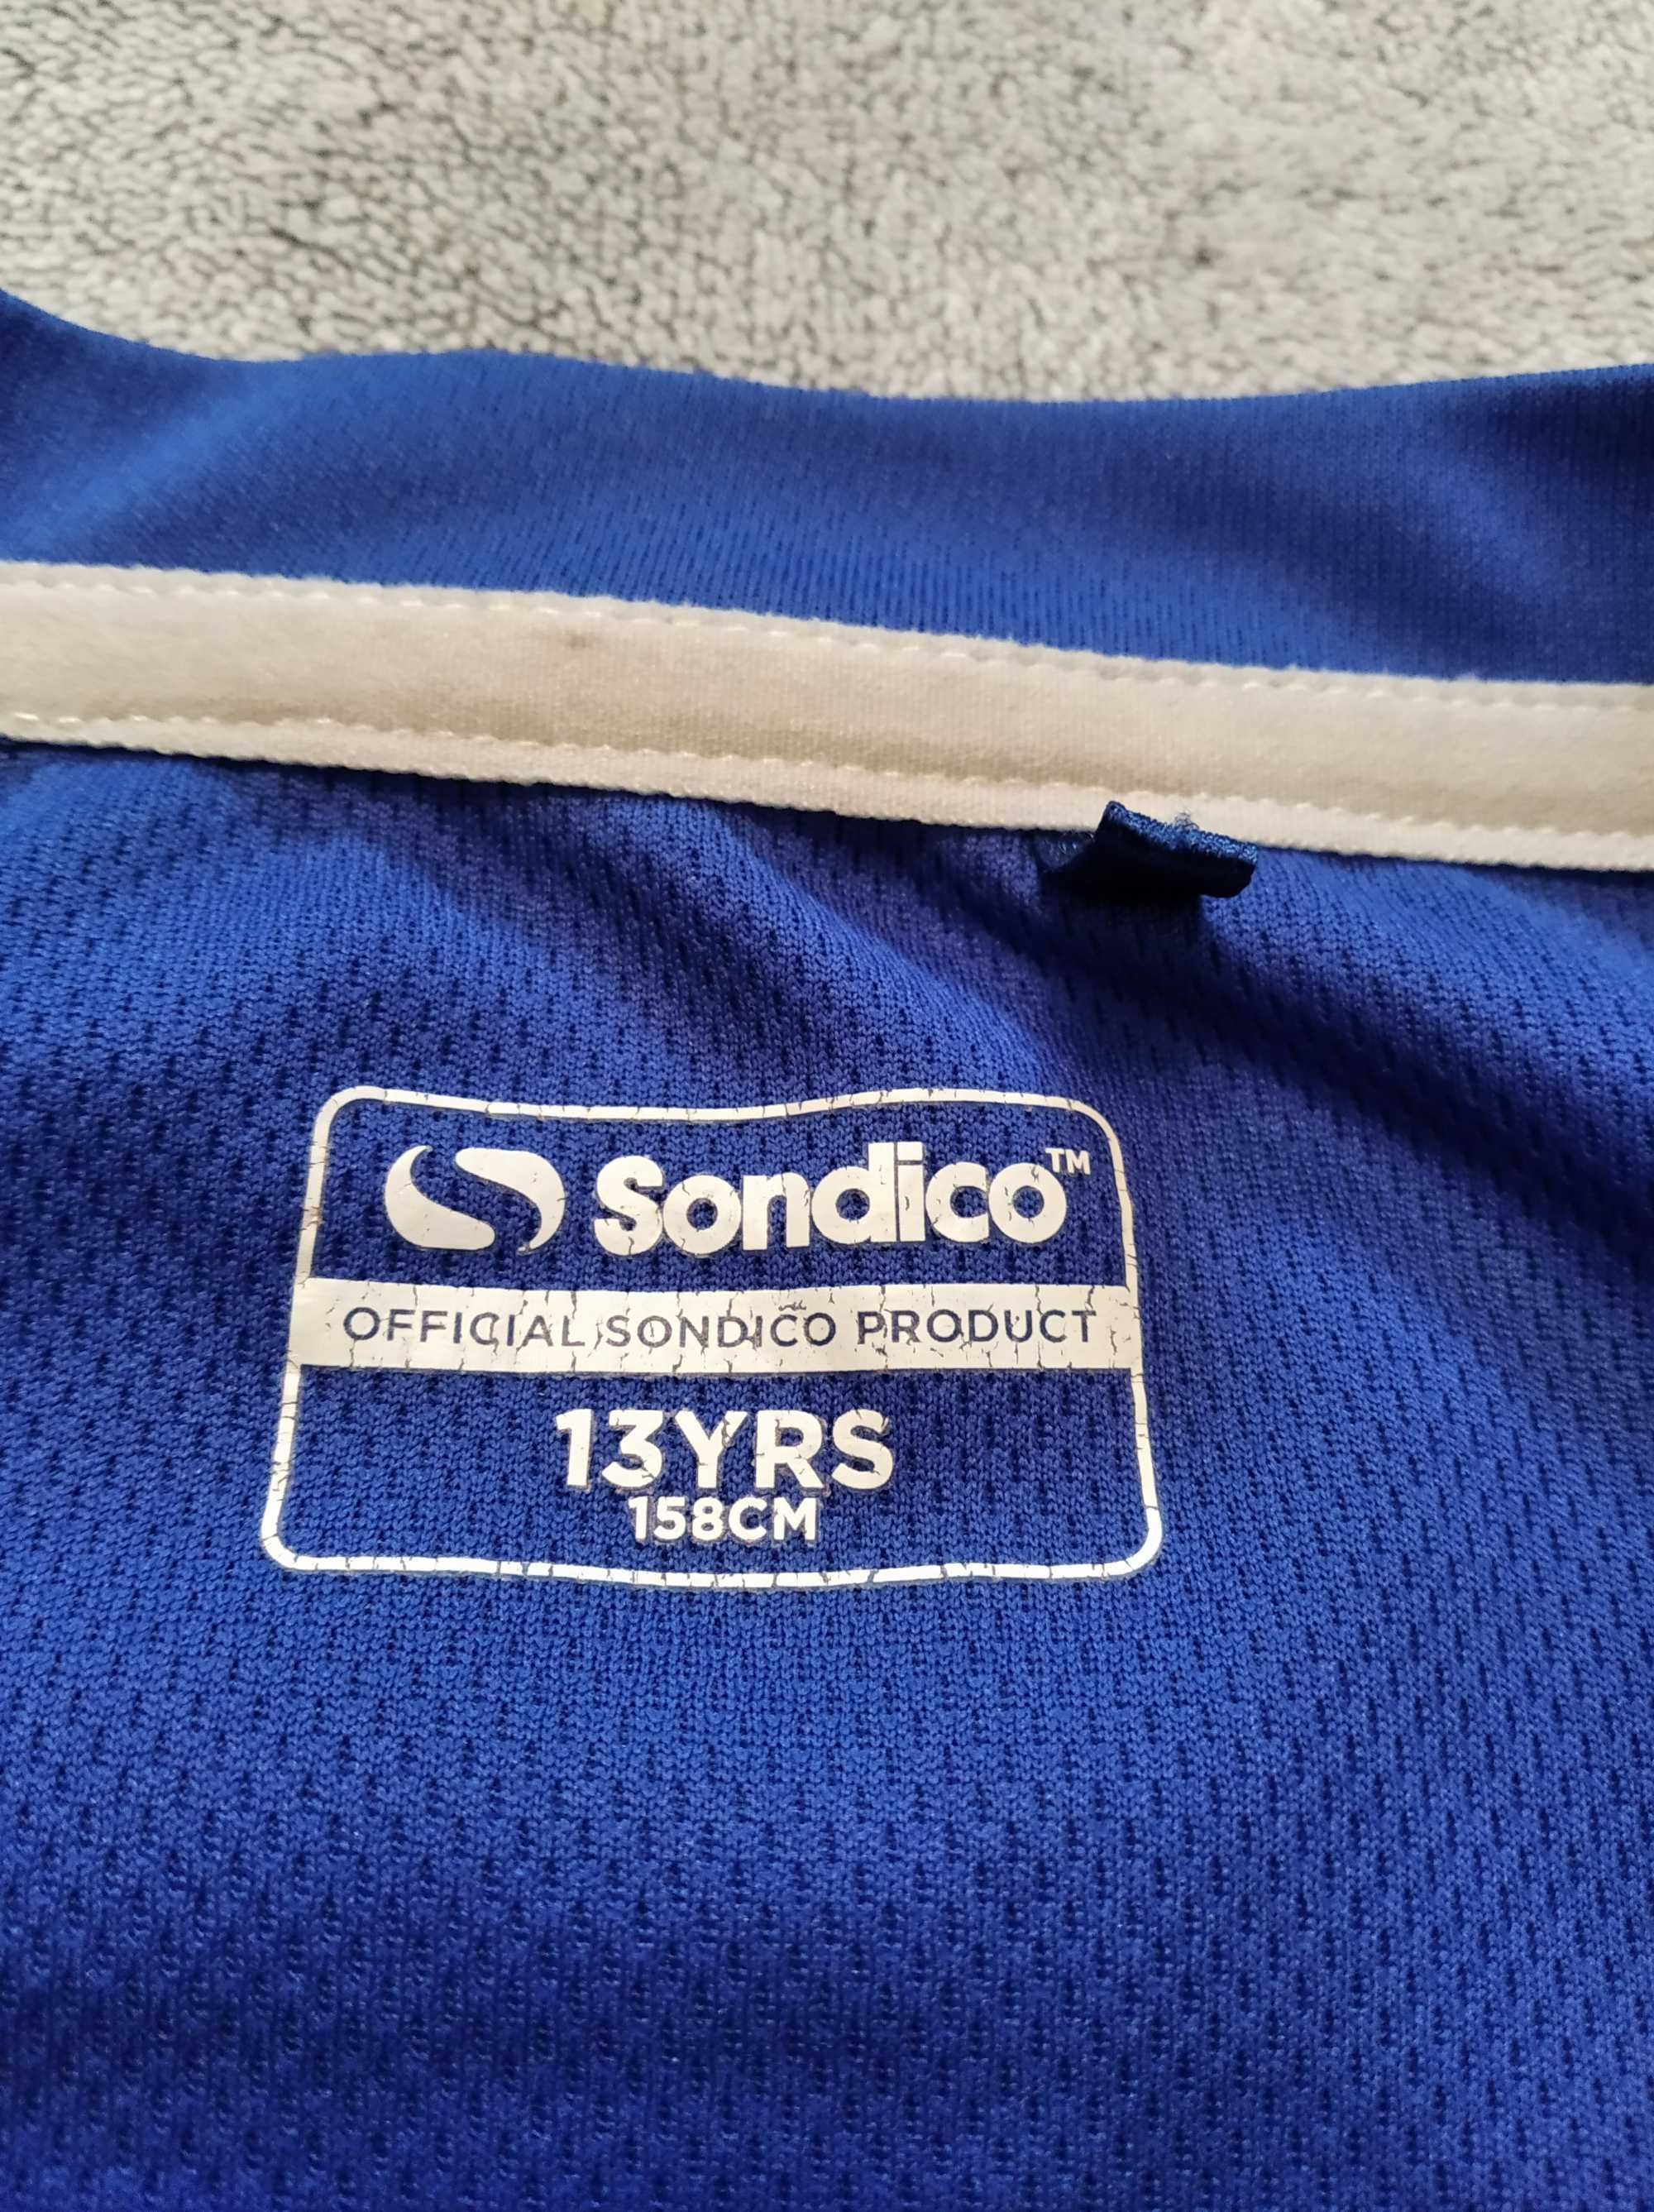 Koszulka termoaktywna Sondico roz. 158 na 13 lat piłka bieganie